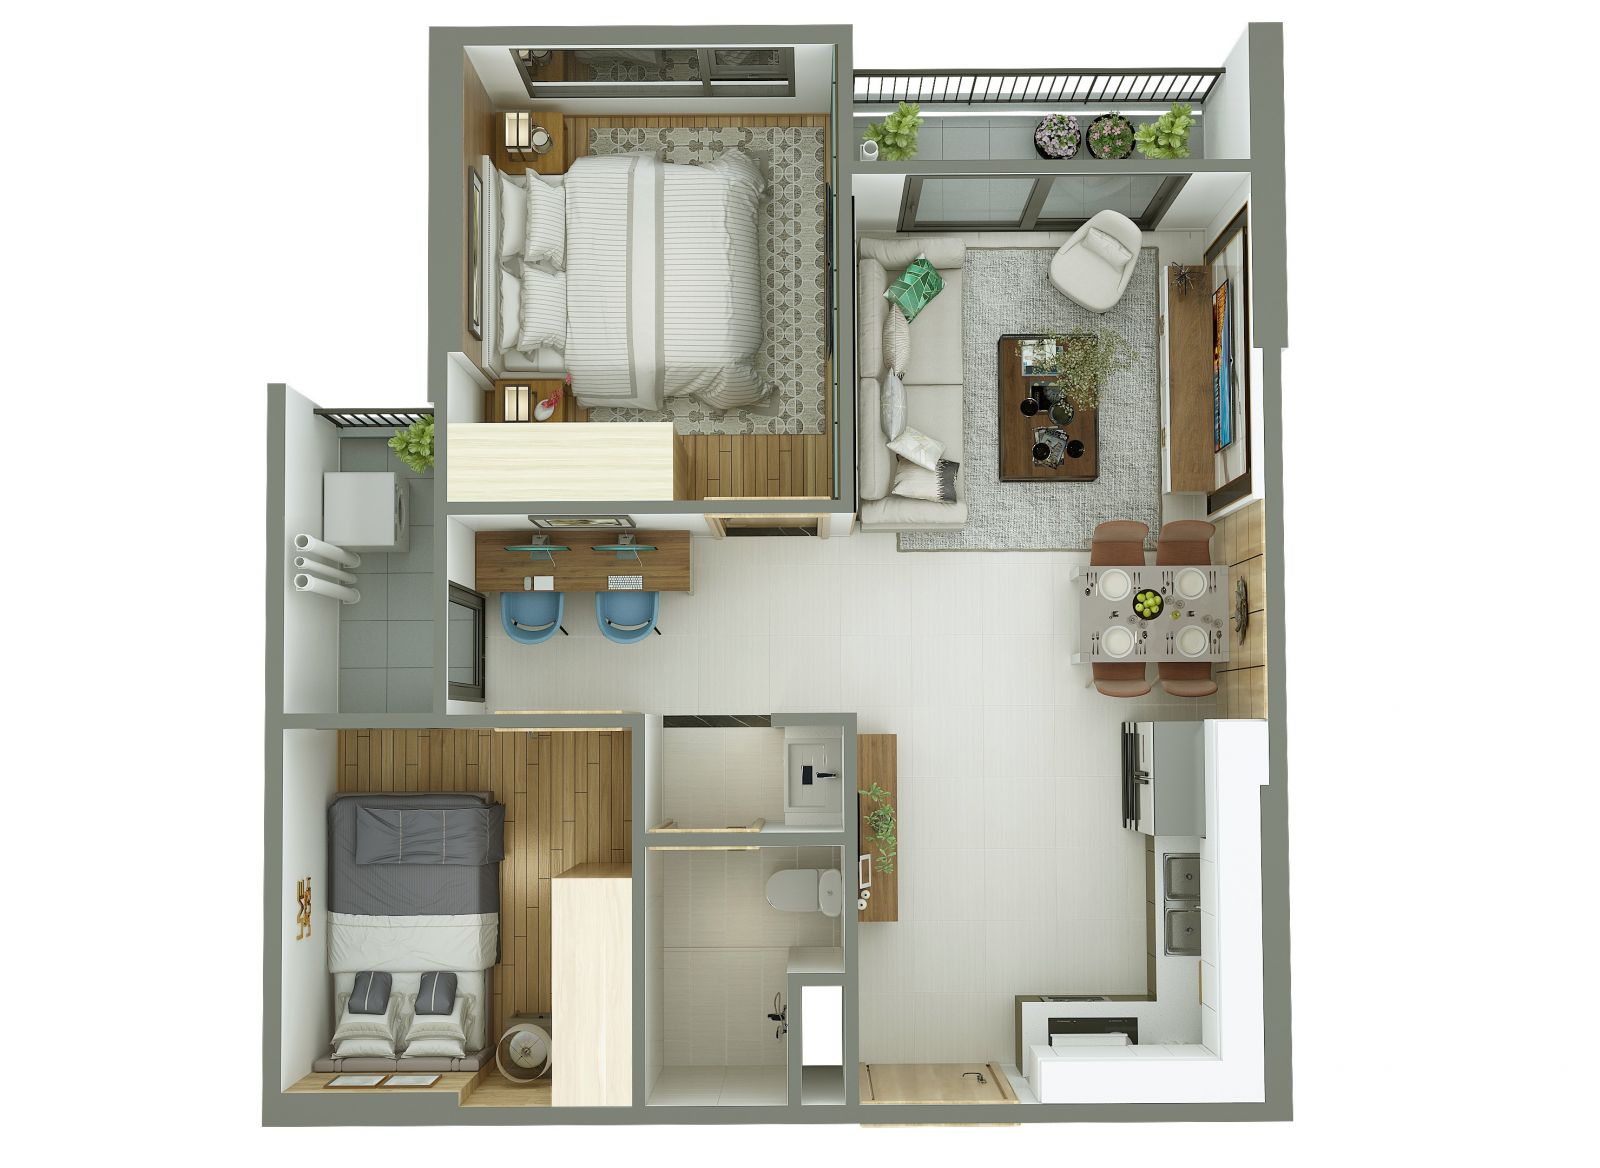 Thiết kế nội thất tham khảo của căn hộ 2 Phòng ngủ + 1 tại VinCity Ocean Park